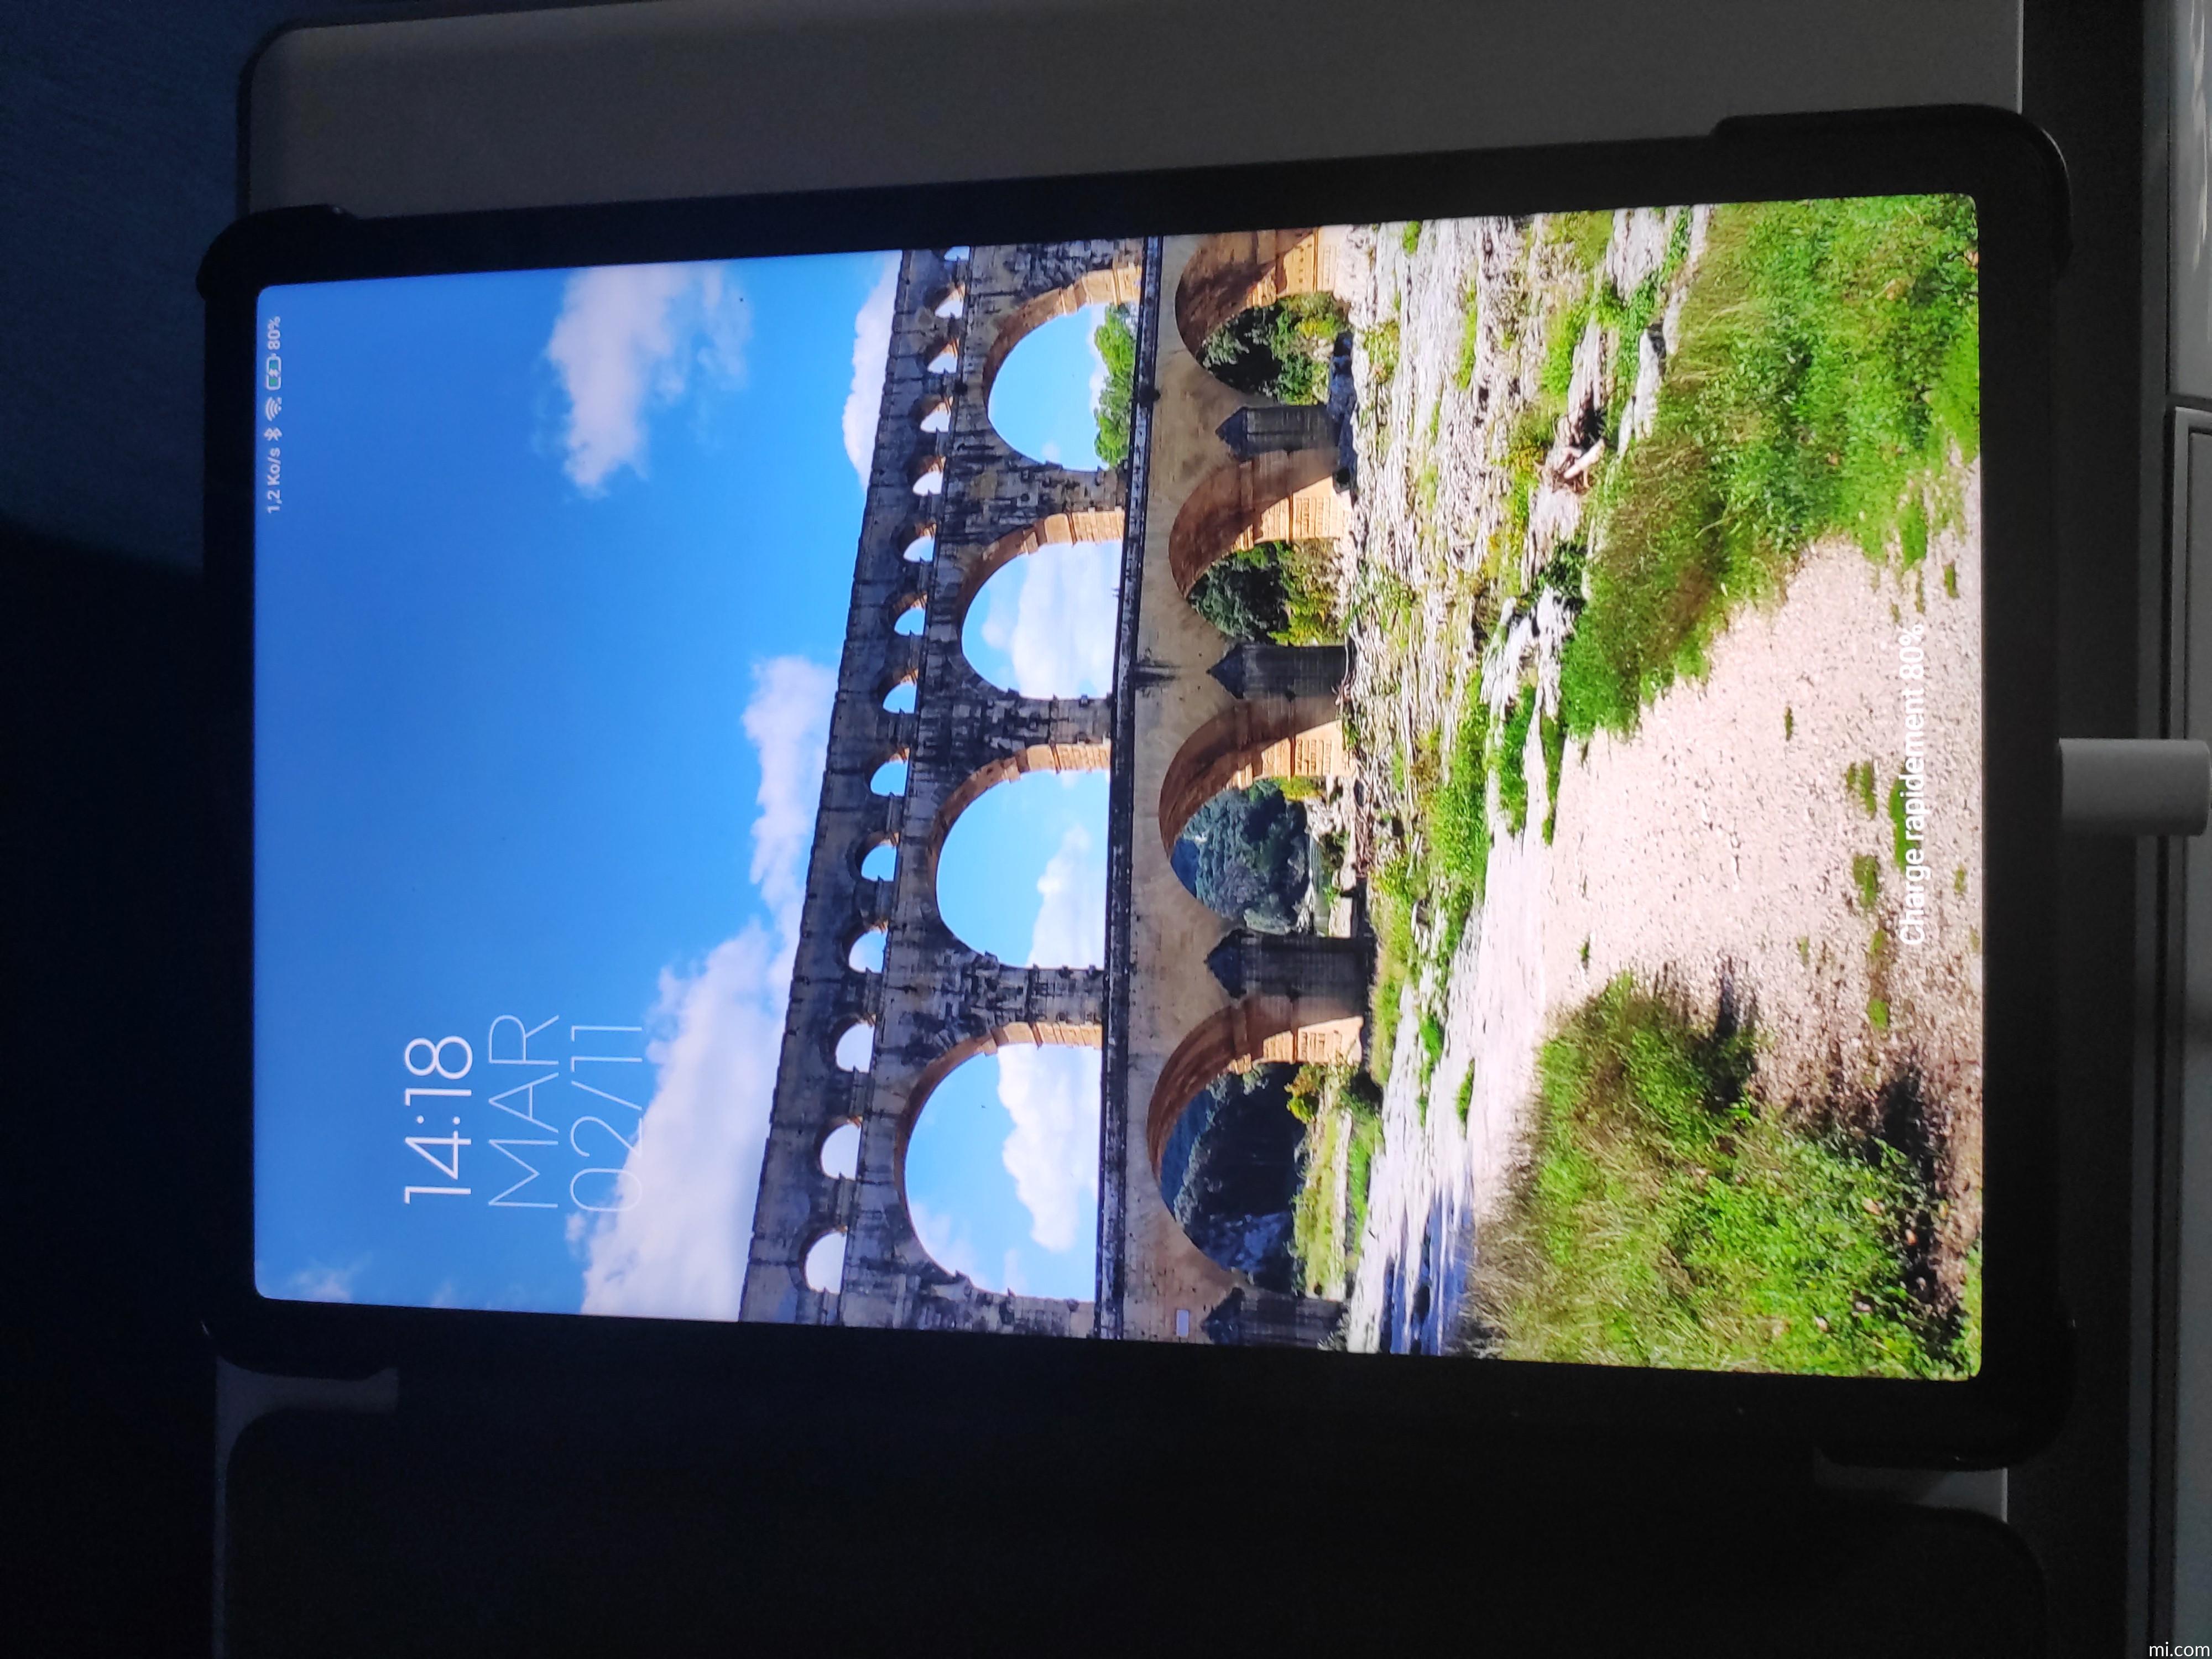 Xiaomi Pad 5 : Une tablette Android 11 pouces de haute qualité à  l'autonomie renforcée - ZDNet